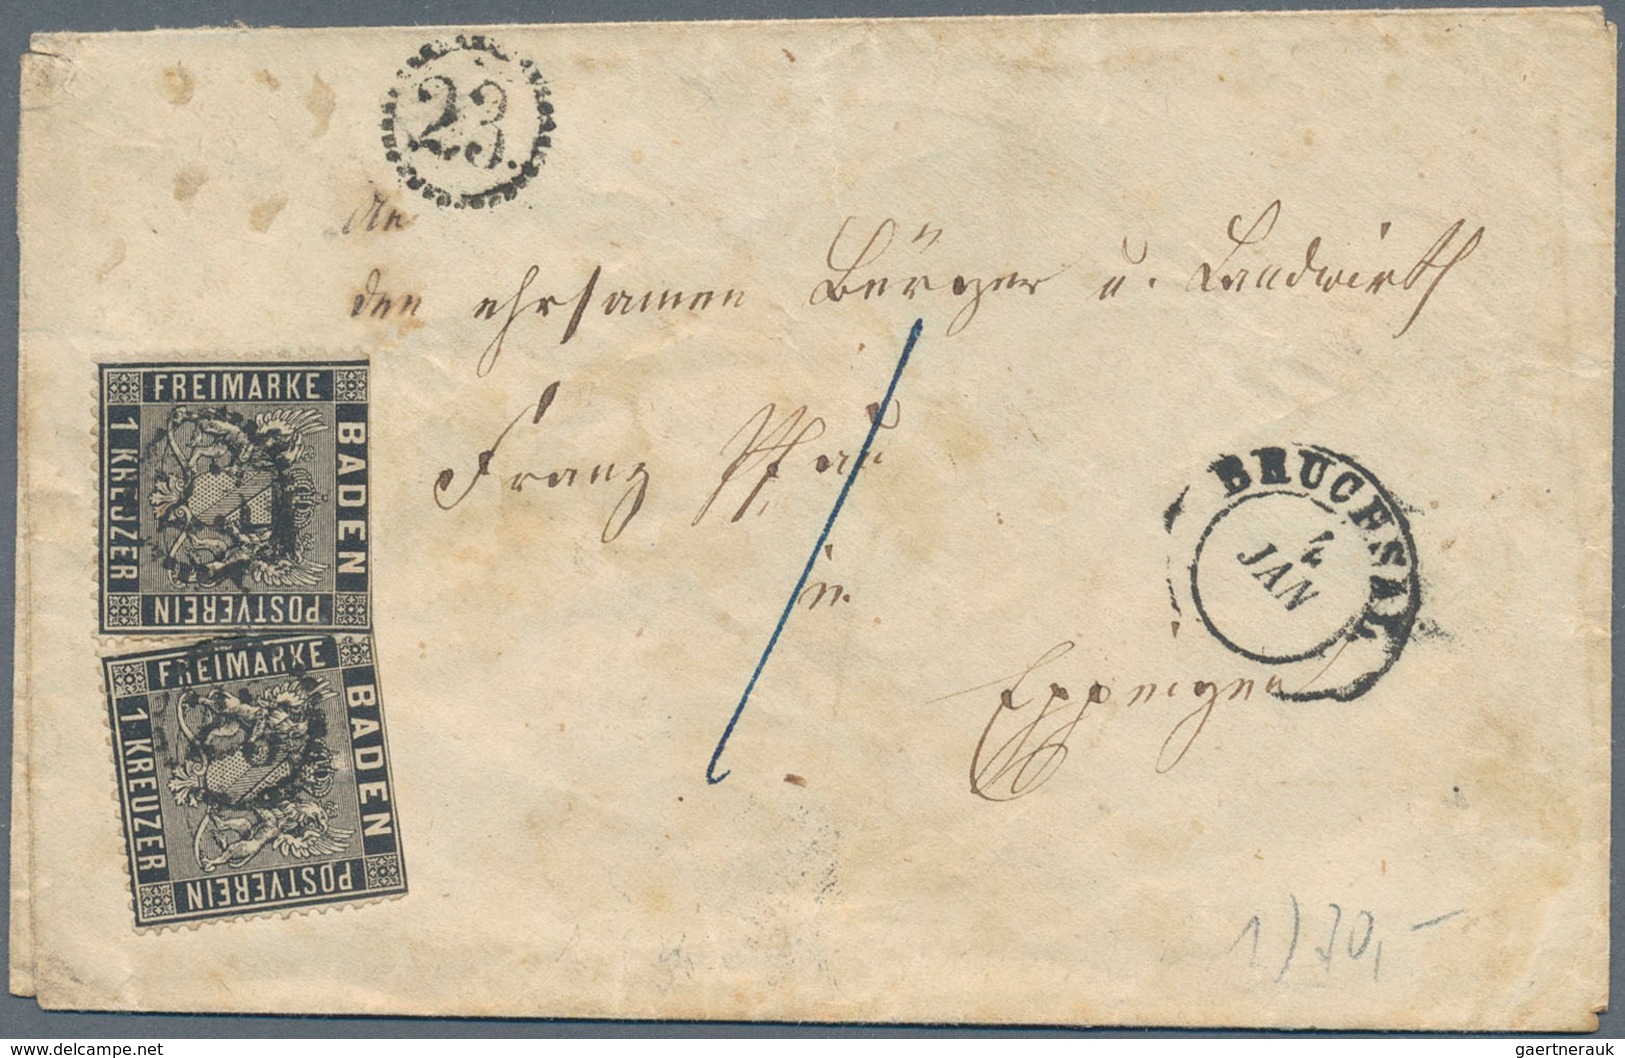 Baden - Marken und Briefe: 1852/1870 (ca.), hochwertige Partie von rund 85 Belegen mit guten Frankat